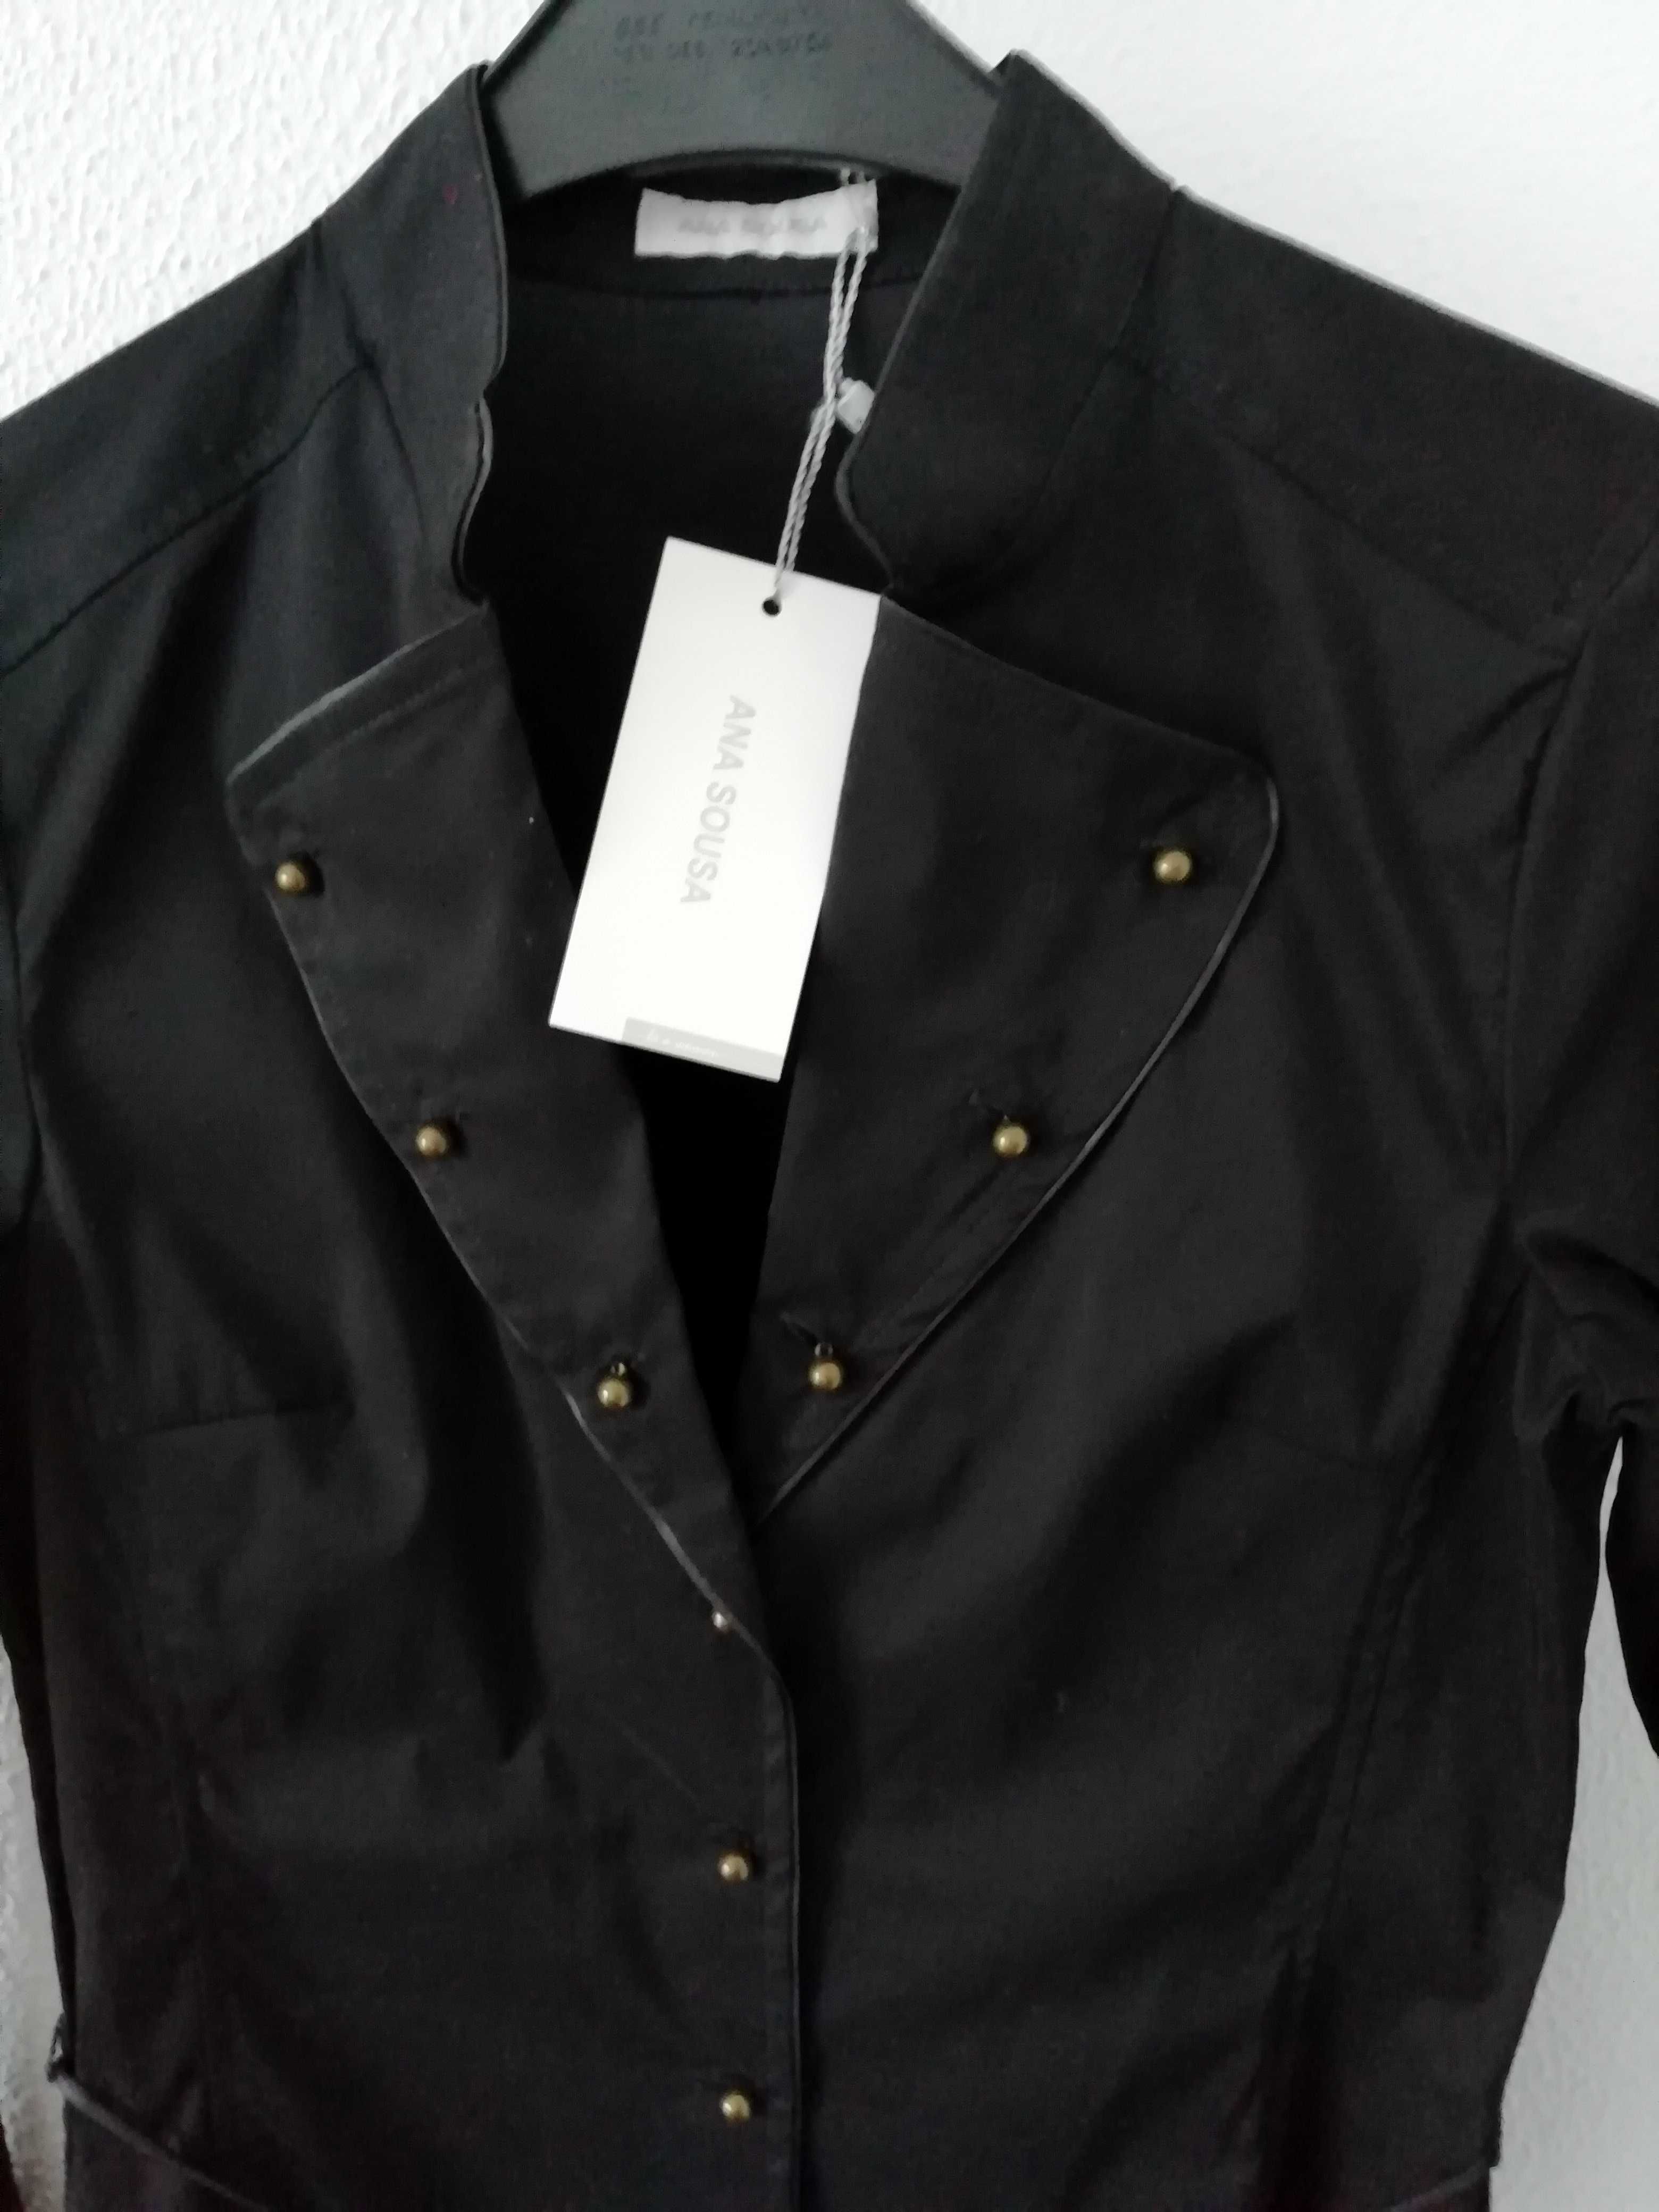 Camisa ou blusa preta da marca  Ana Sousa em estado Novo- Tam 34